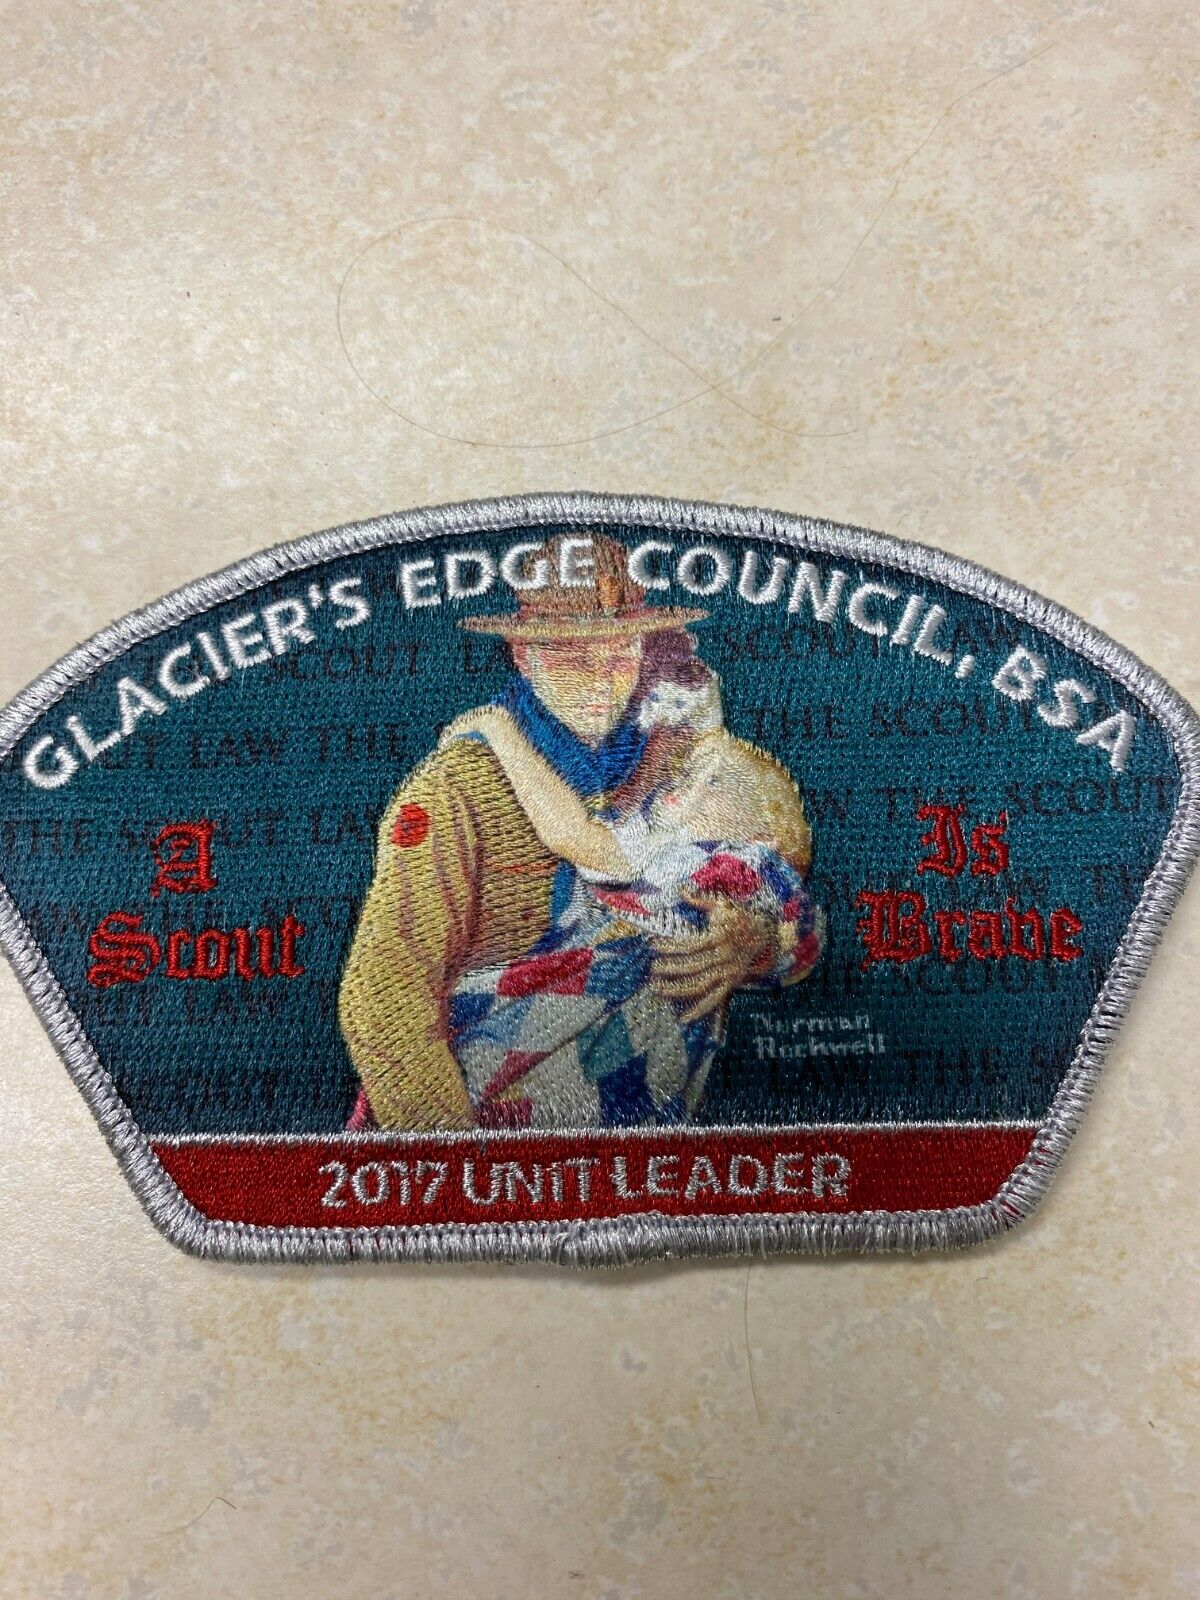 2017 Glacier's Edge Council Unit Leader CSP